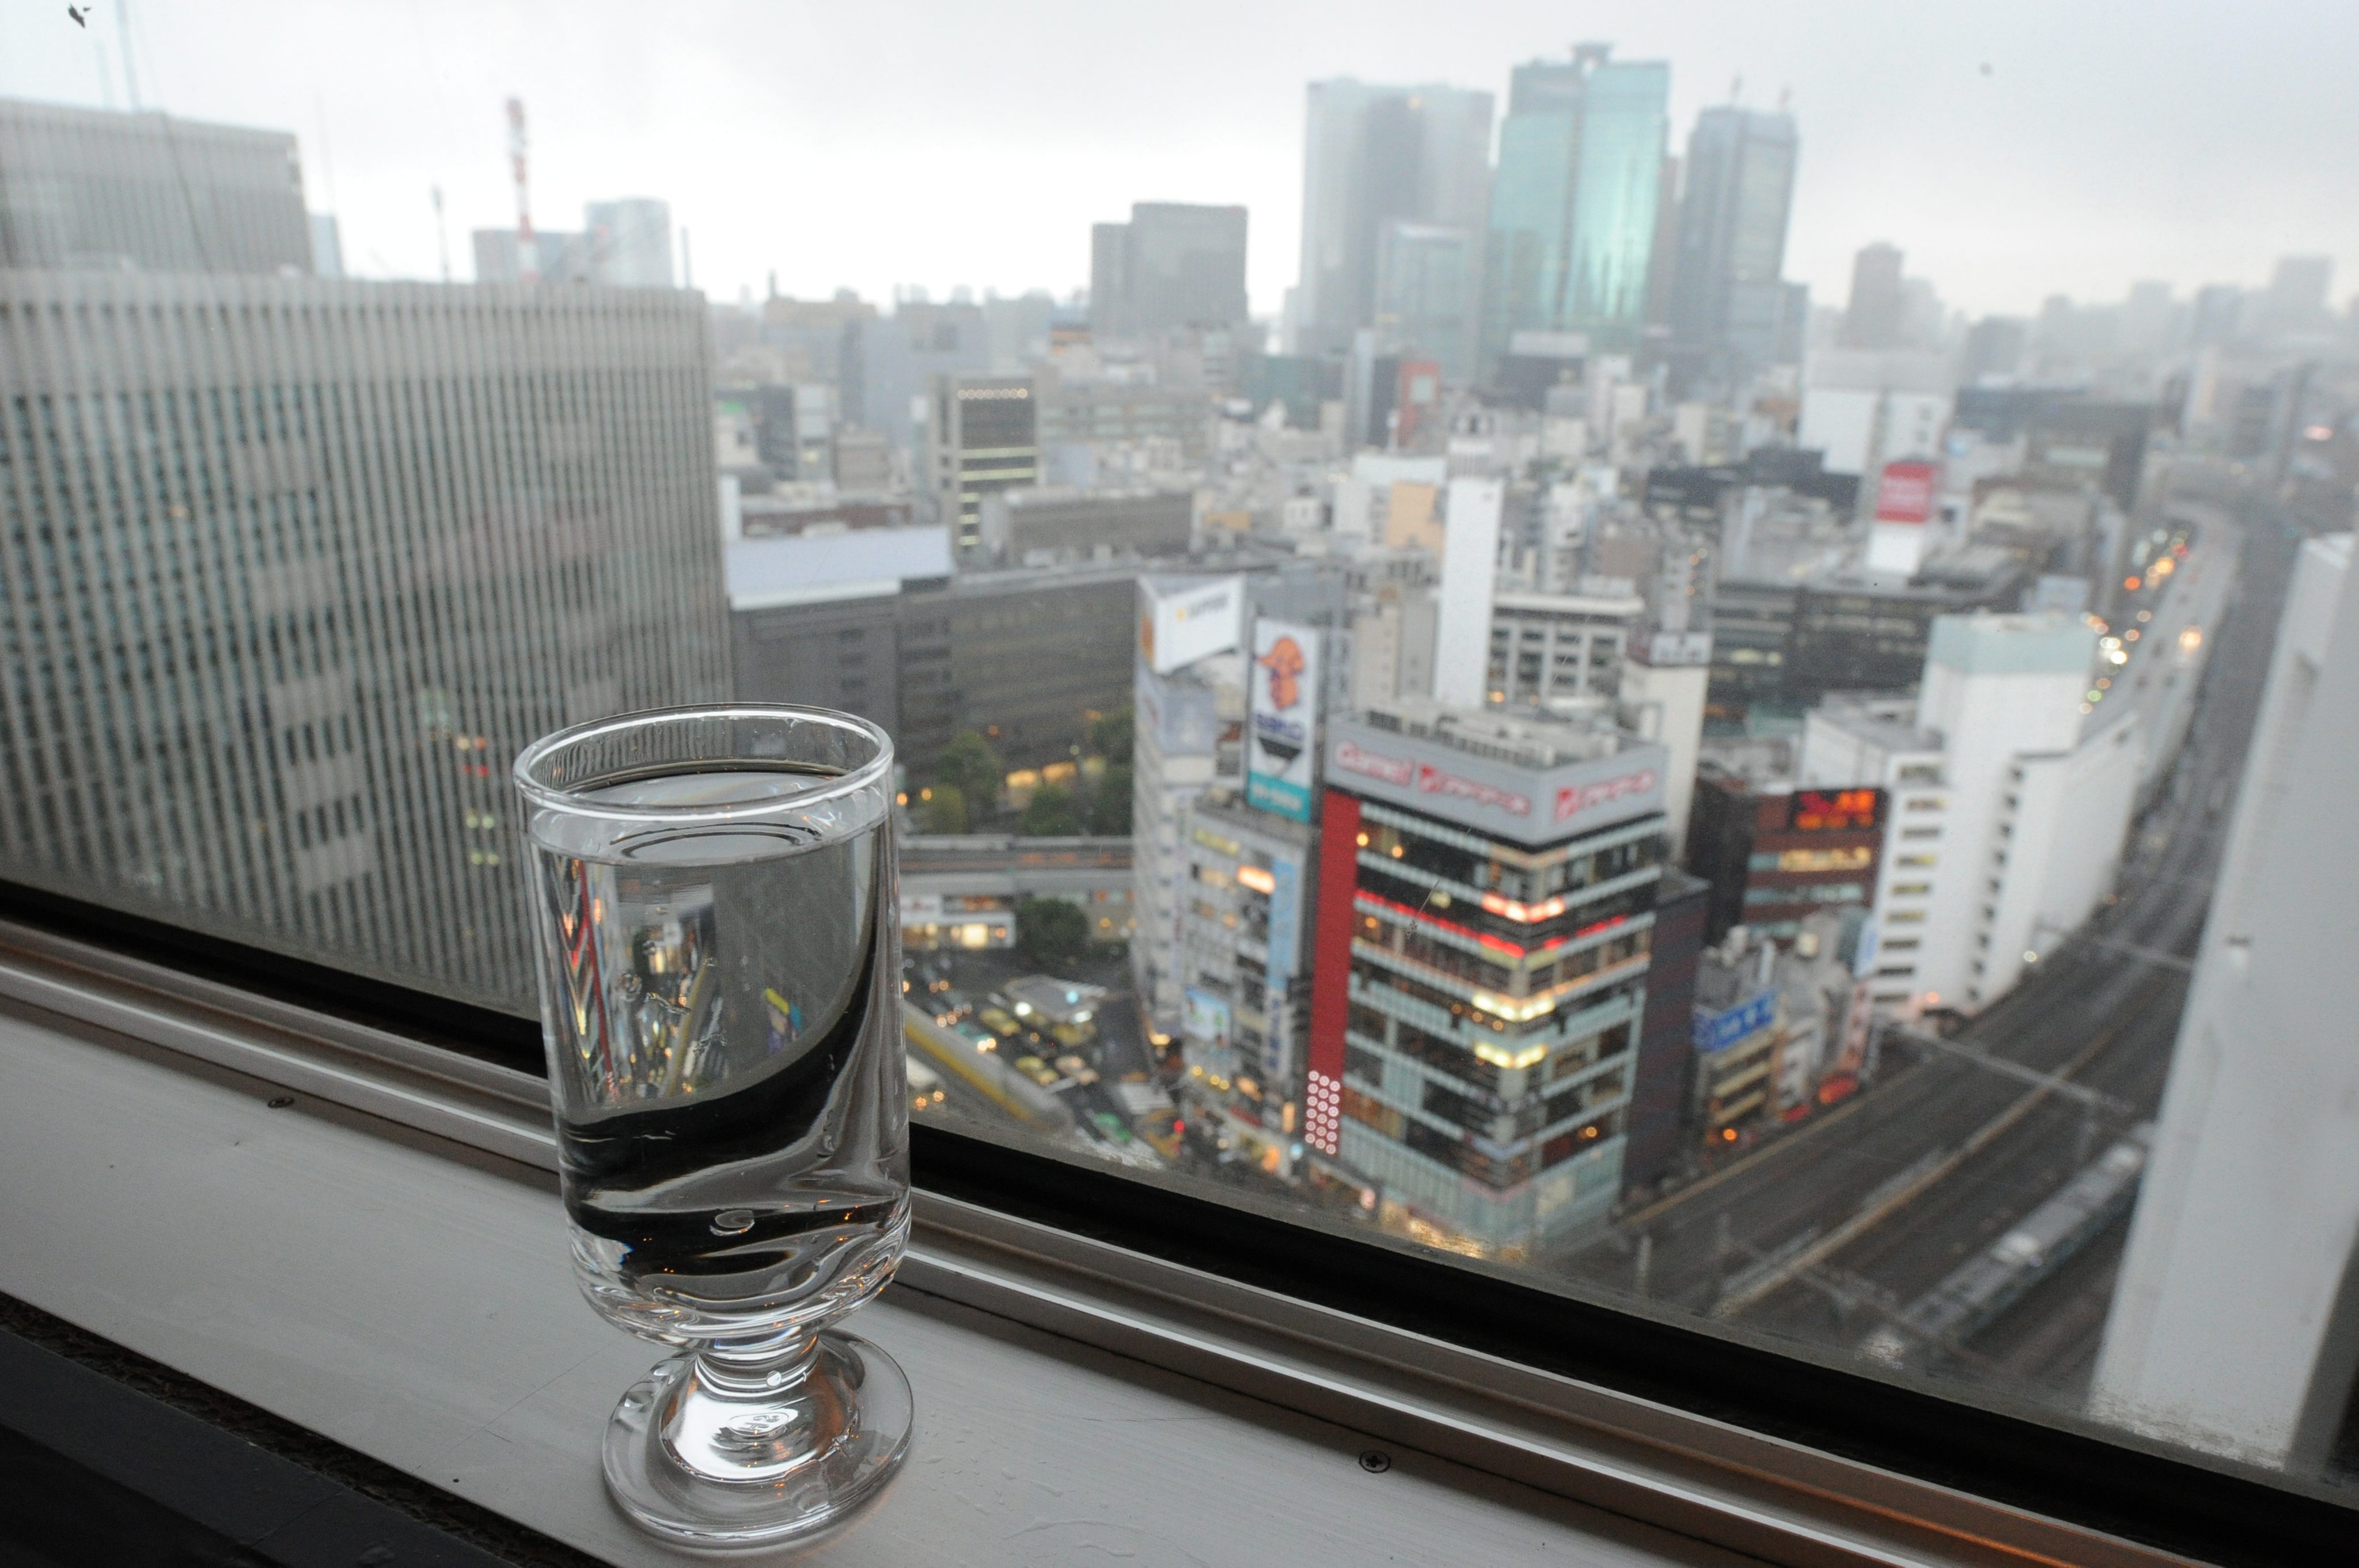 Властите в Токио препоръчаха бебетата да не пият чешмяна вода заради радиация над допустимите равнища